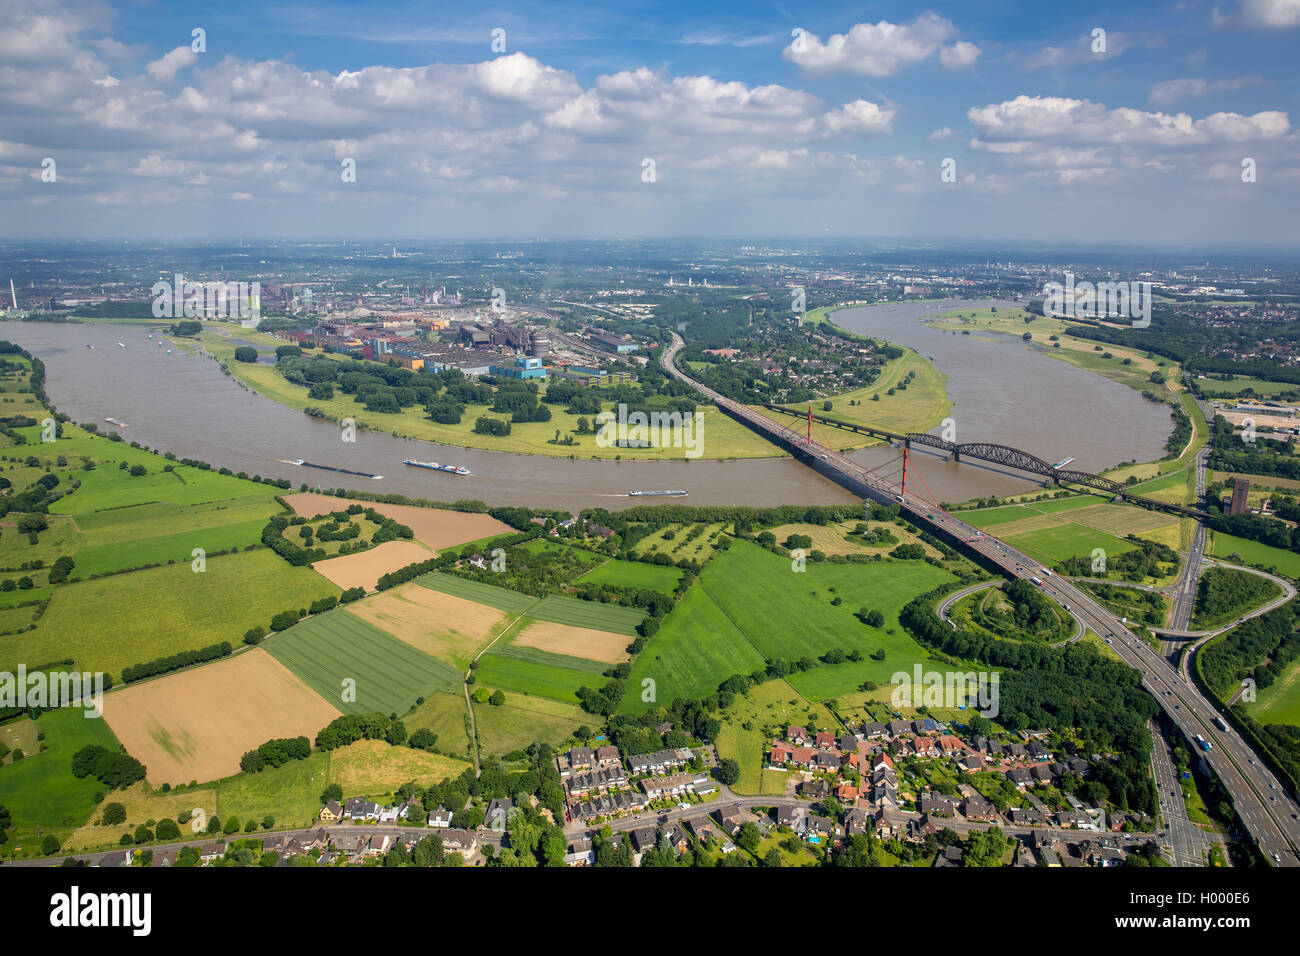 Luftbild, Rheinbogen mit braunem Rheinwasser zwischen Duisburg-Baerl und Beeckerwerth, Hochwasser, Eisenbahnbrücke, A42 Autobahn Stock Photo